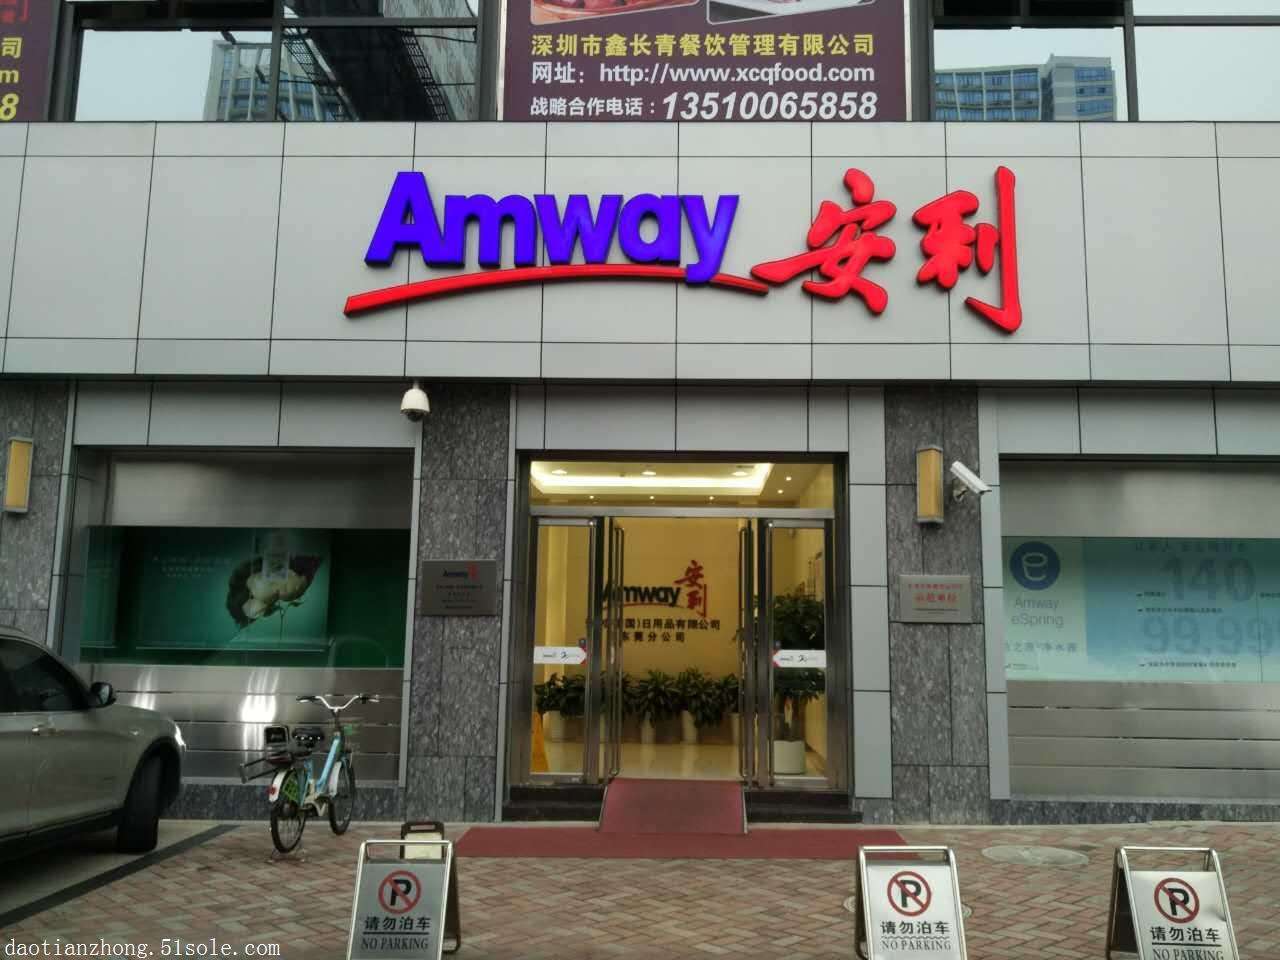 北京东城安利空气净化器 安利公司详细地址